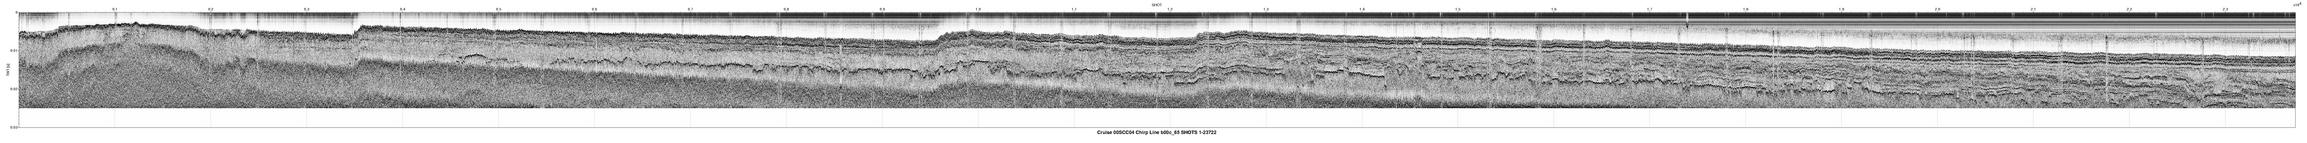 00SCC04 b00c_65 seismic profile image